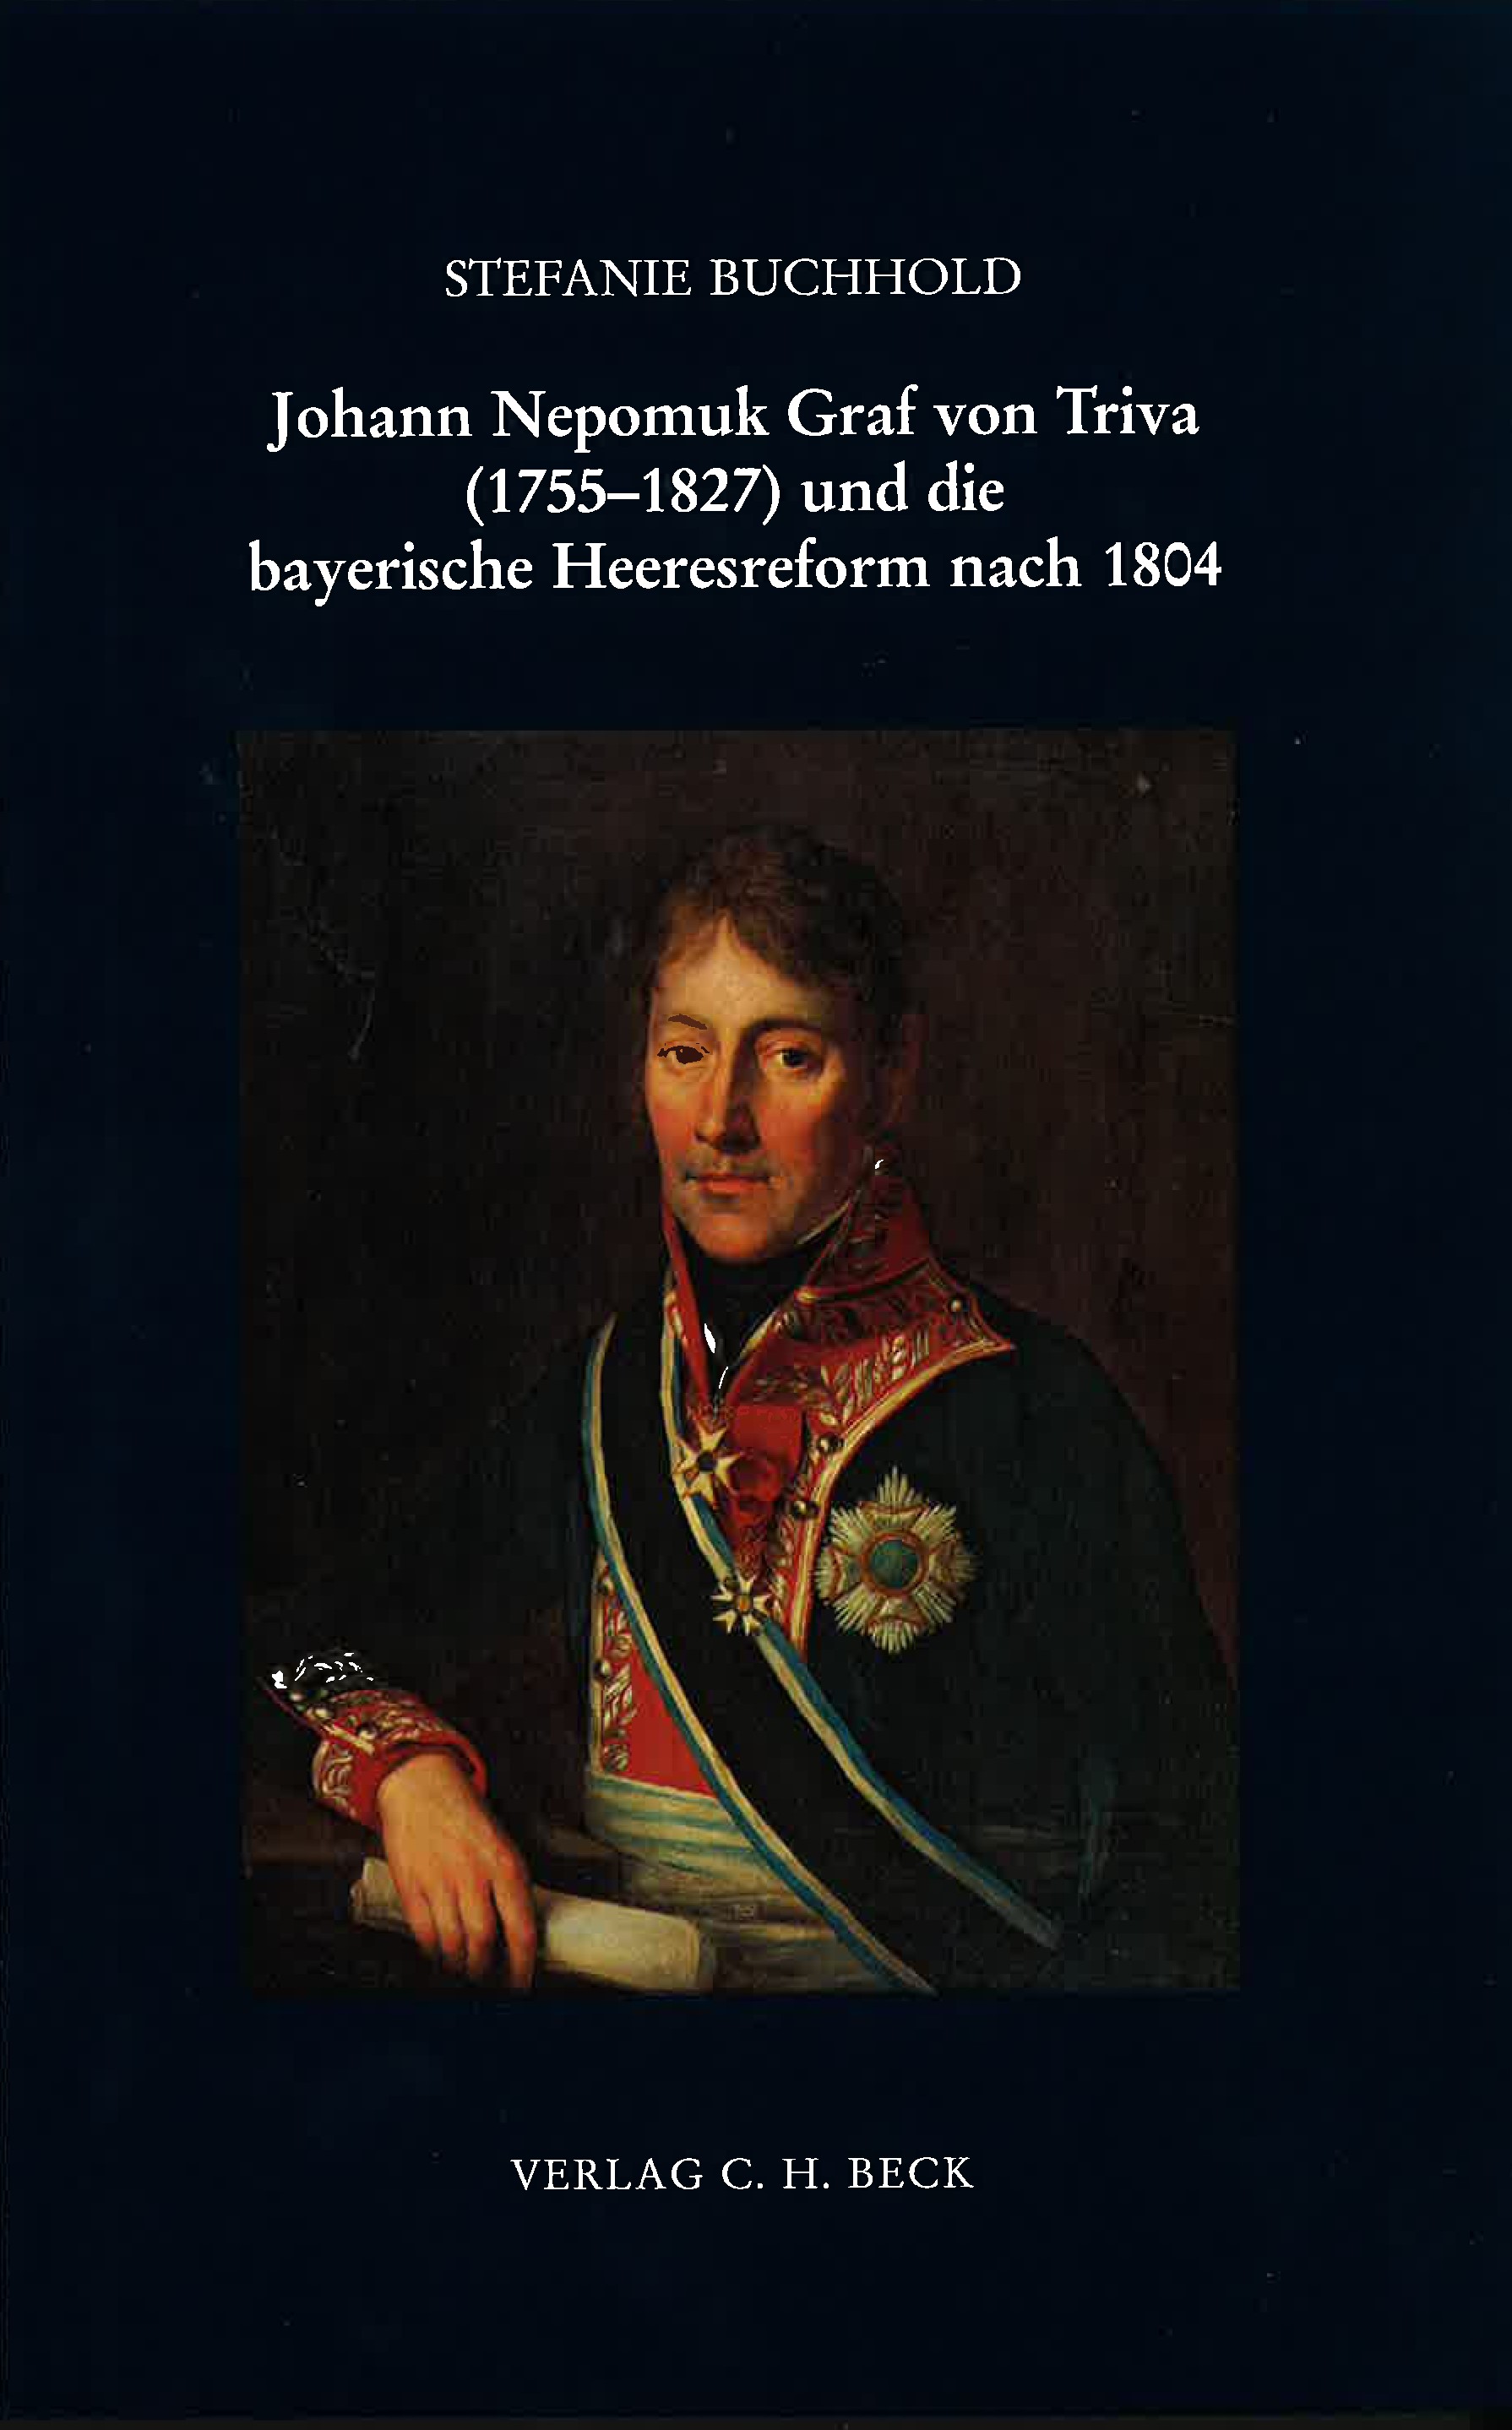 Cover: Buchhold, Stefanie, Johann Nepomuk Graf von Triva (1755-1827) und die bayerische Heeresreform nach 1804